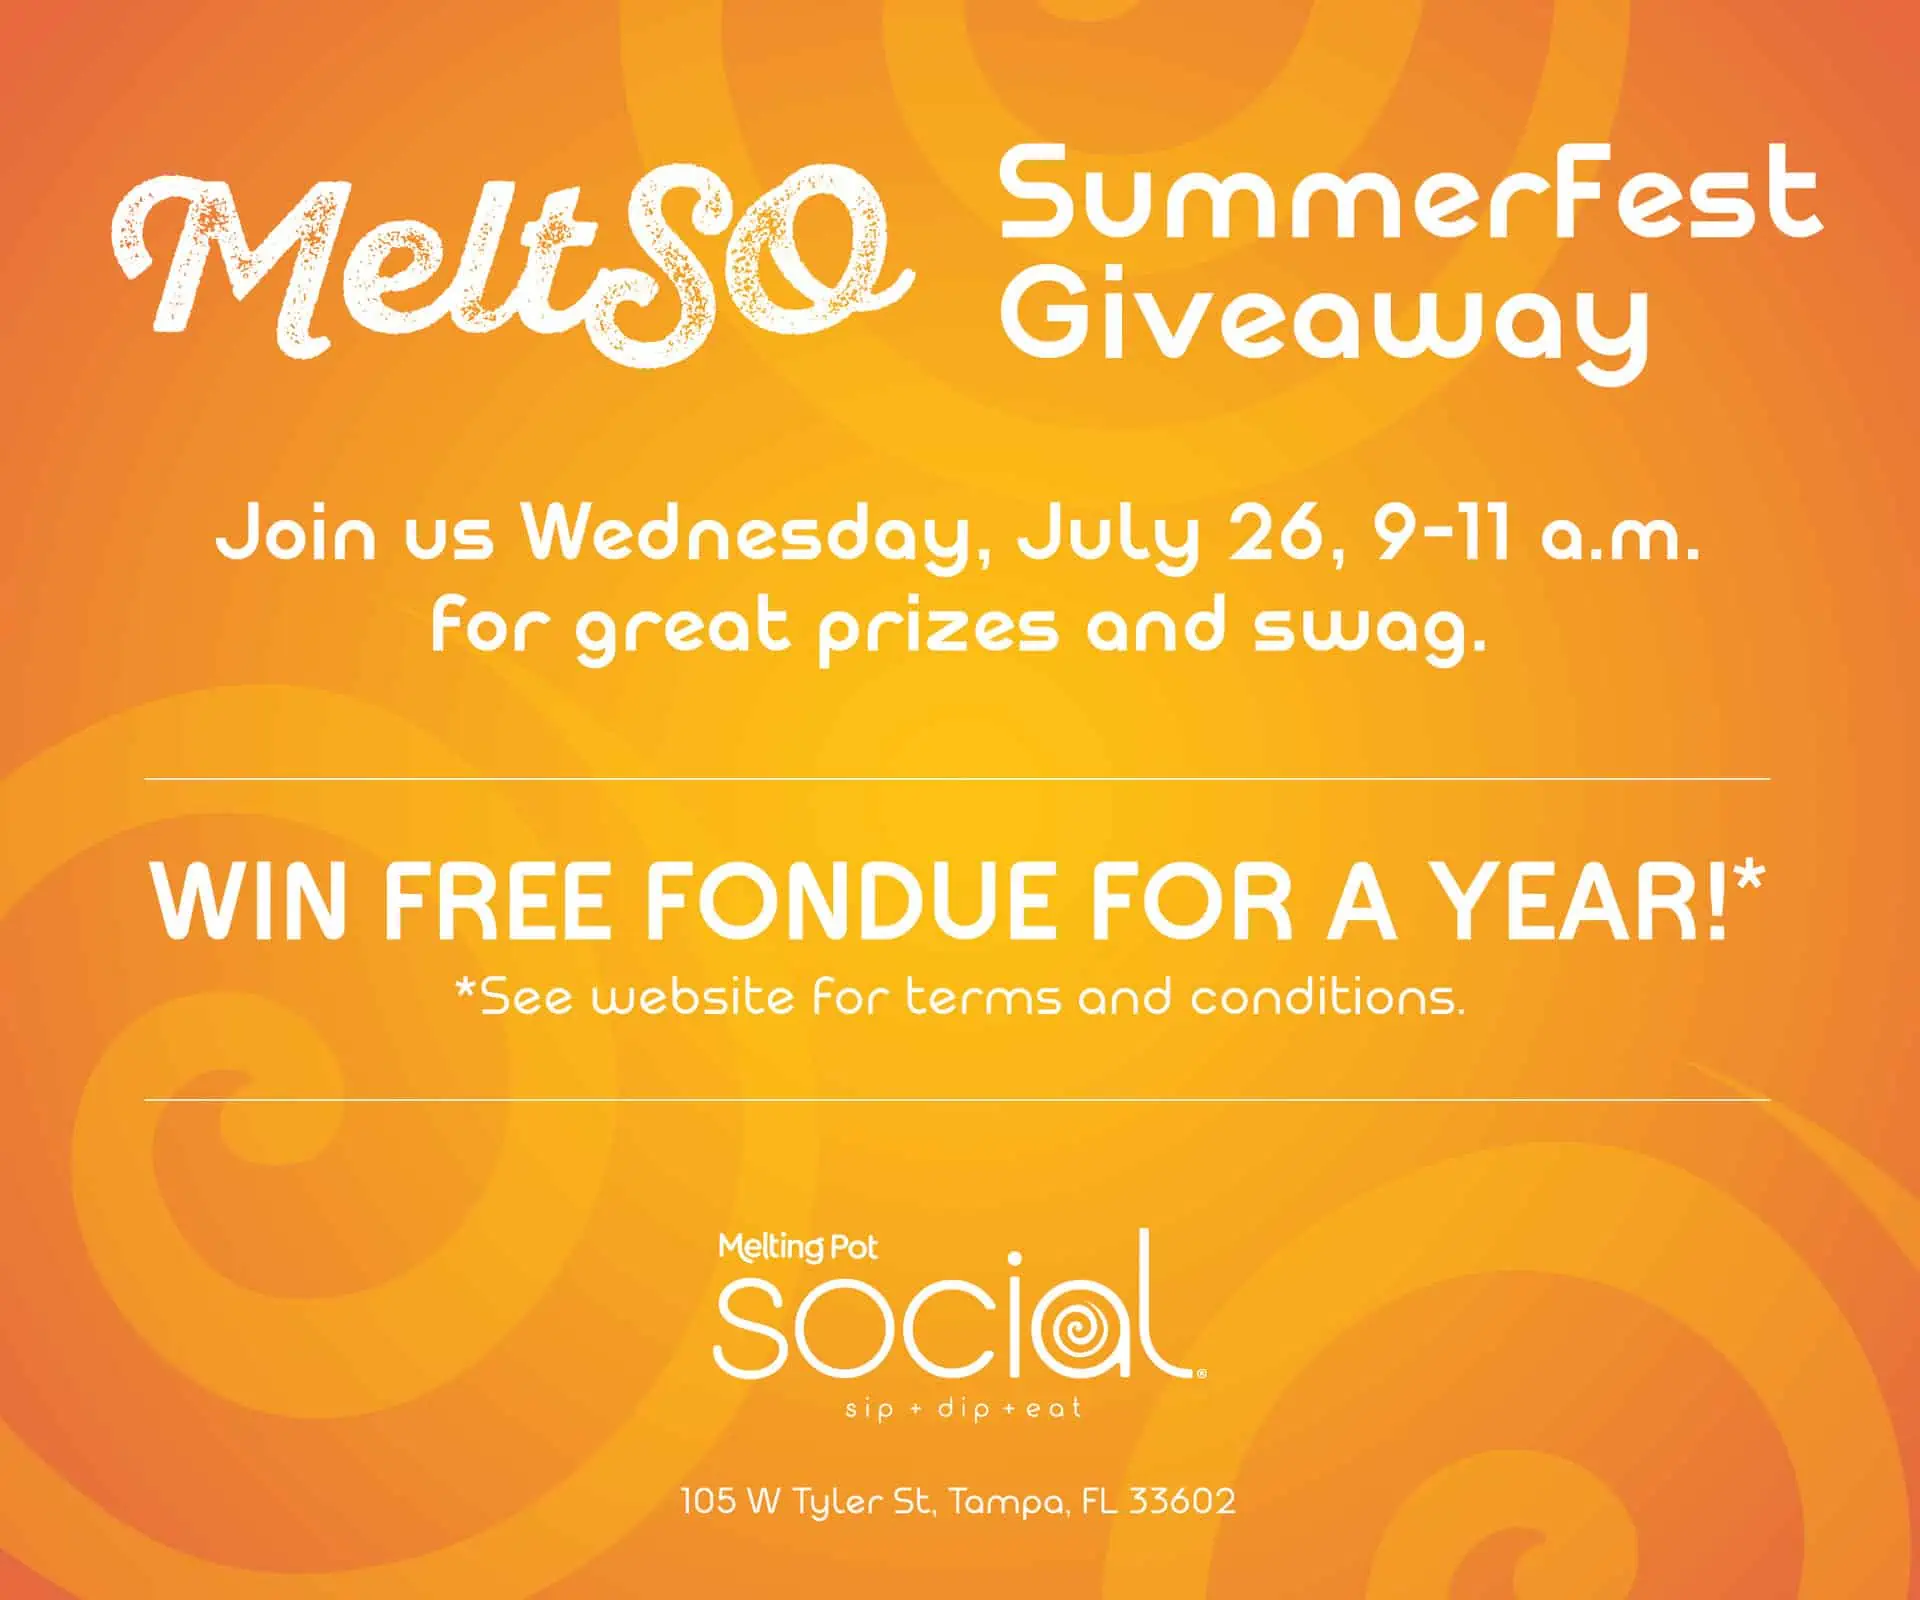 SummerFest Giveaway - win a year of free fondue!